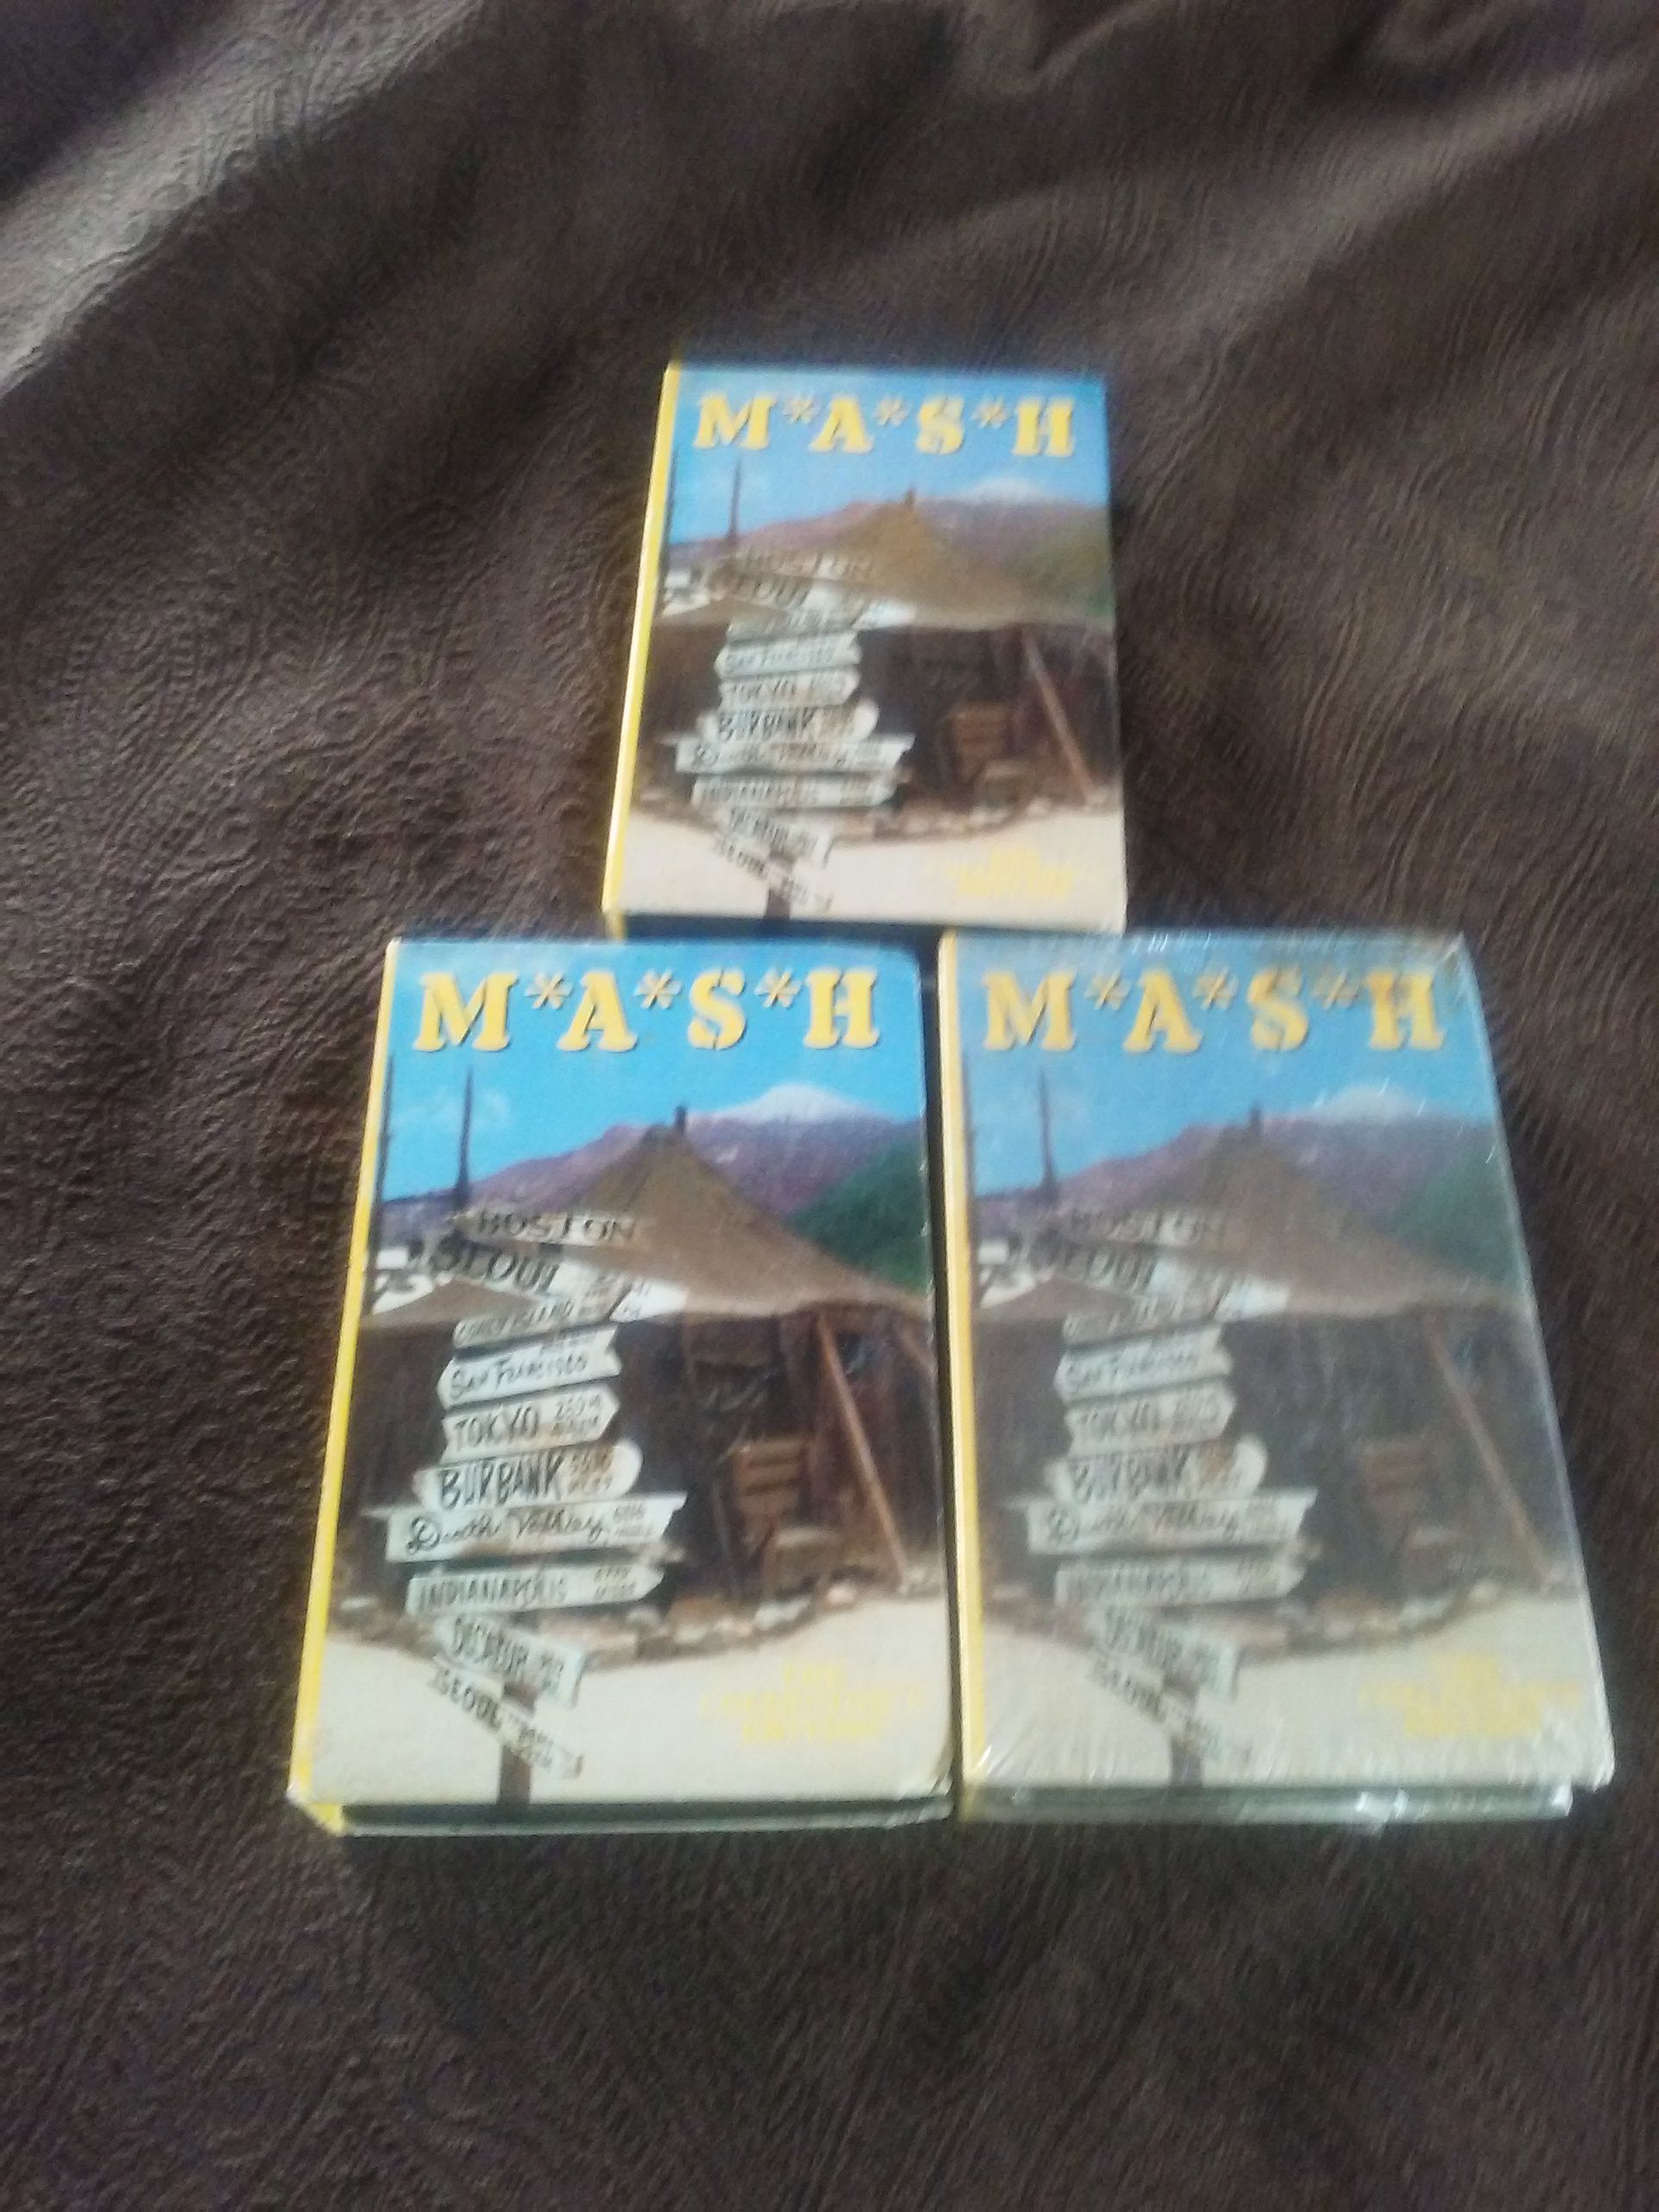 ONE LOT (65 ea) MASH VHS VIDEO CASSETTES